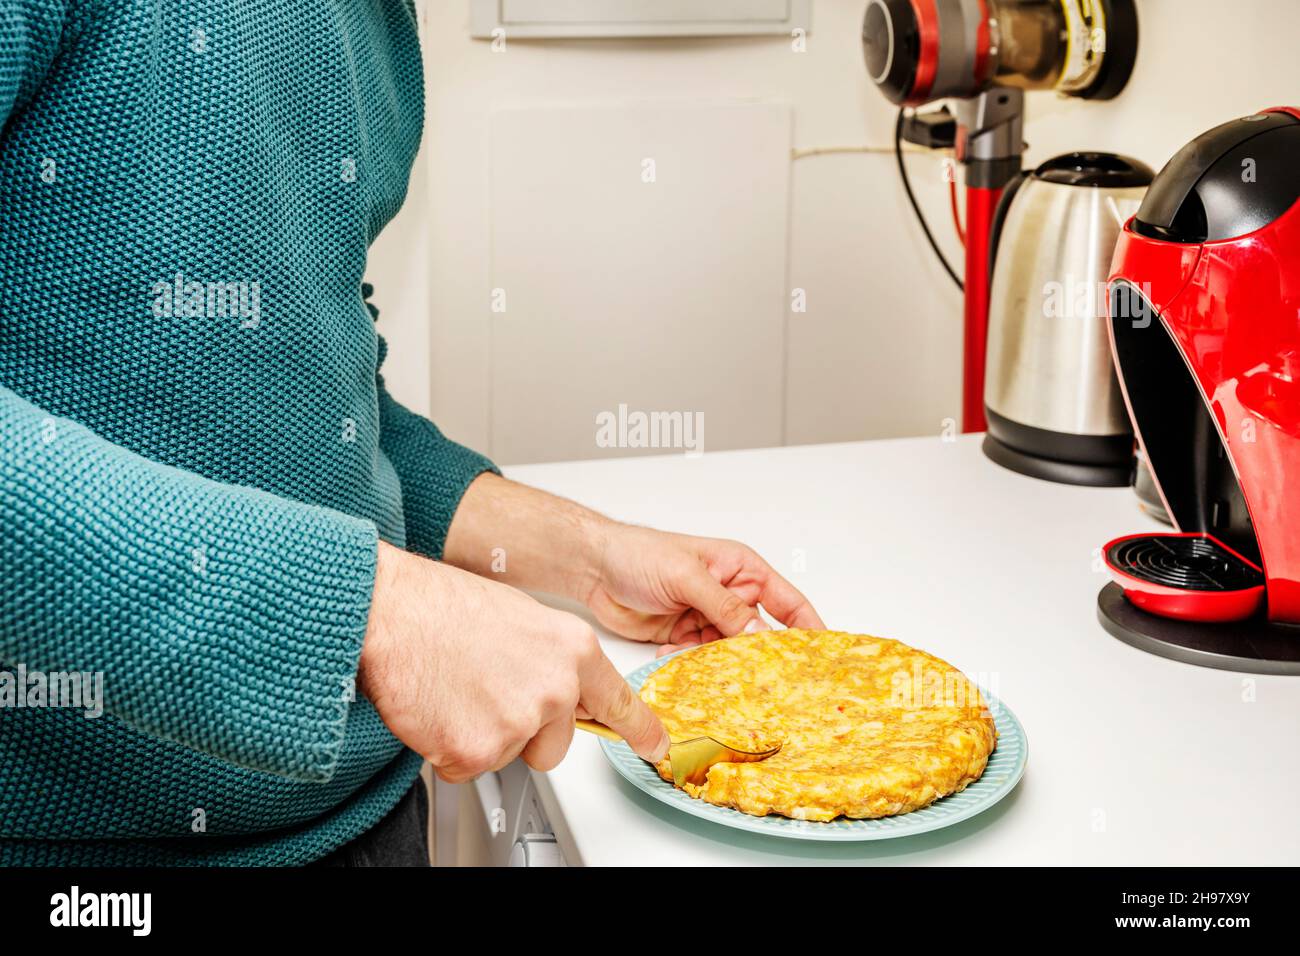 Die Hand eines jungen Mannes hält eine goldene Gabel, um ein frisch zubereitetes spanisches Omelett auf einer weißen Küchentheke zu essen Stockfoto